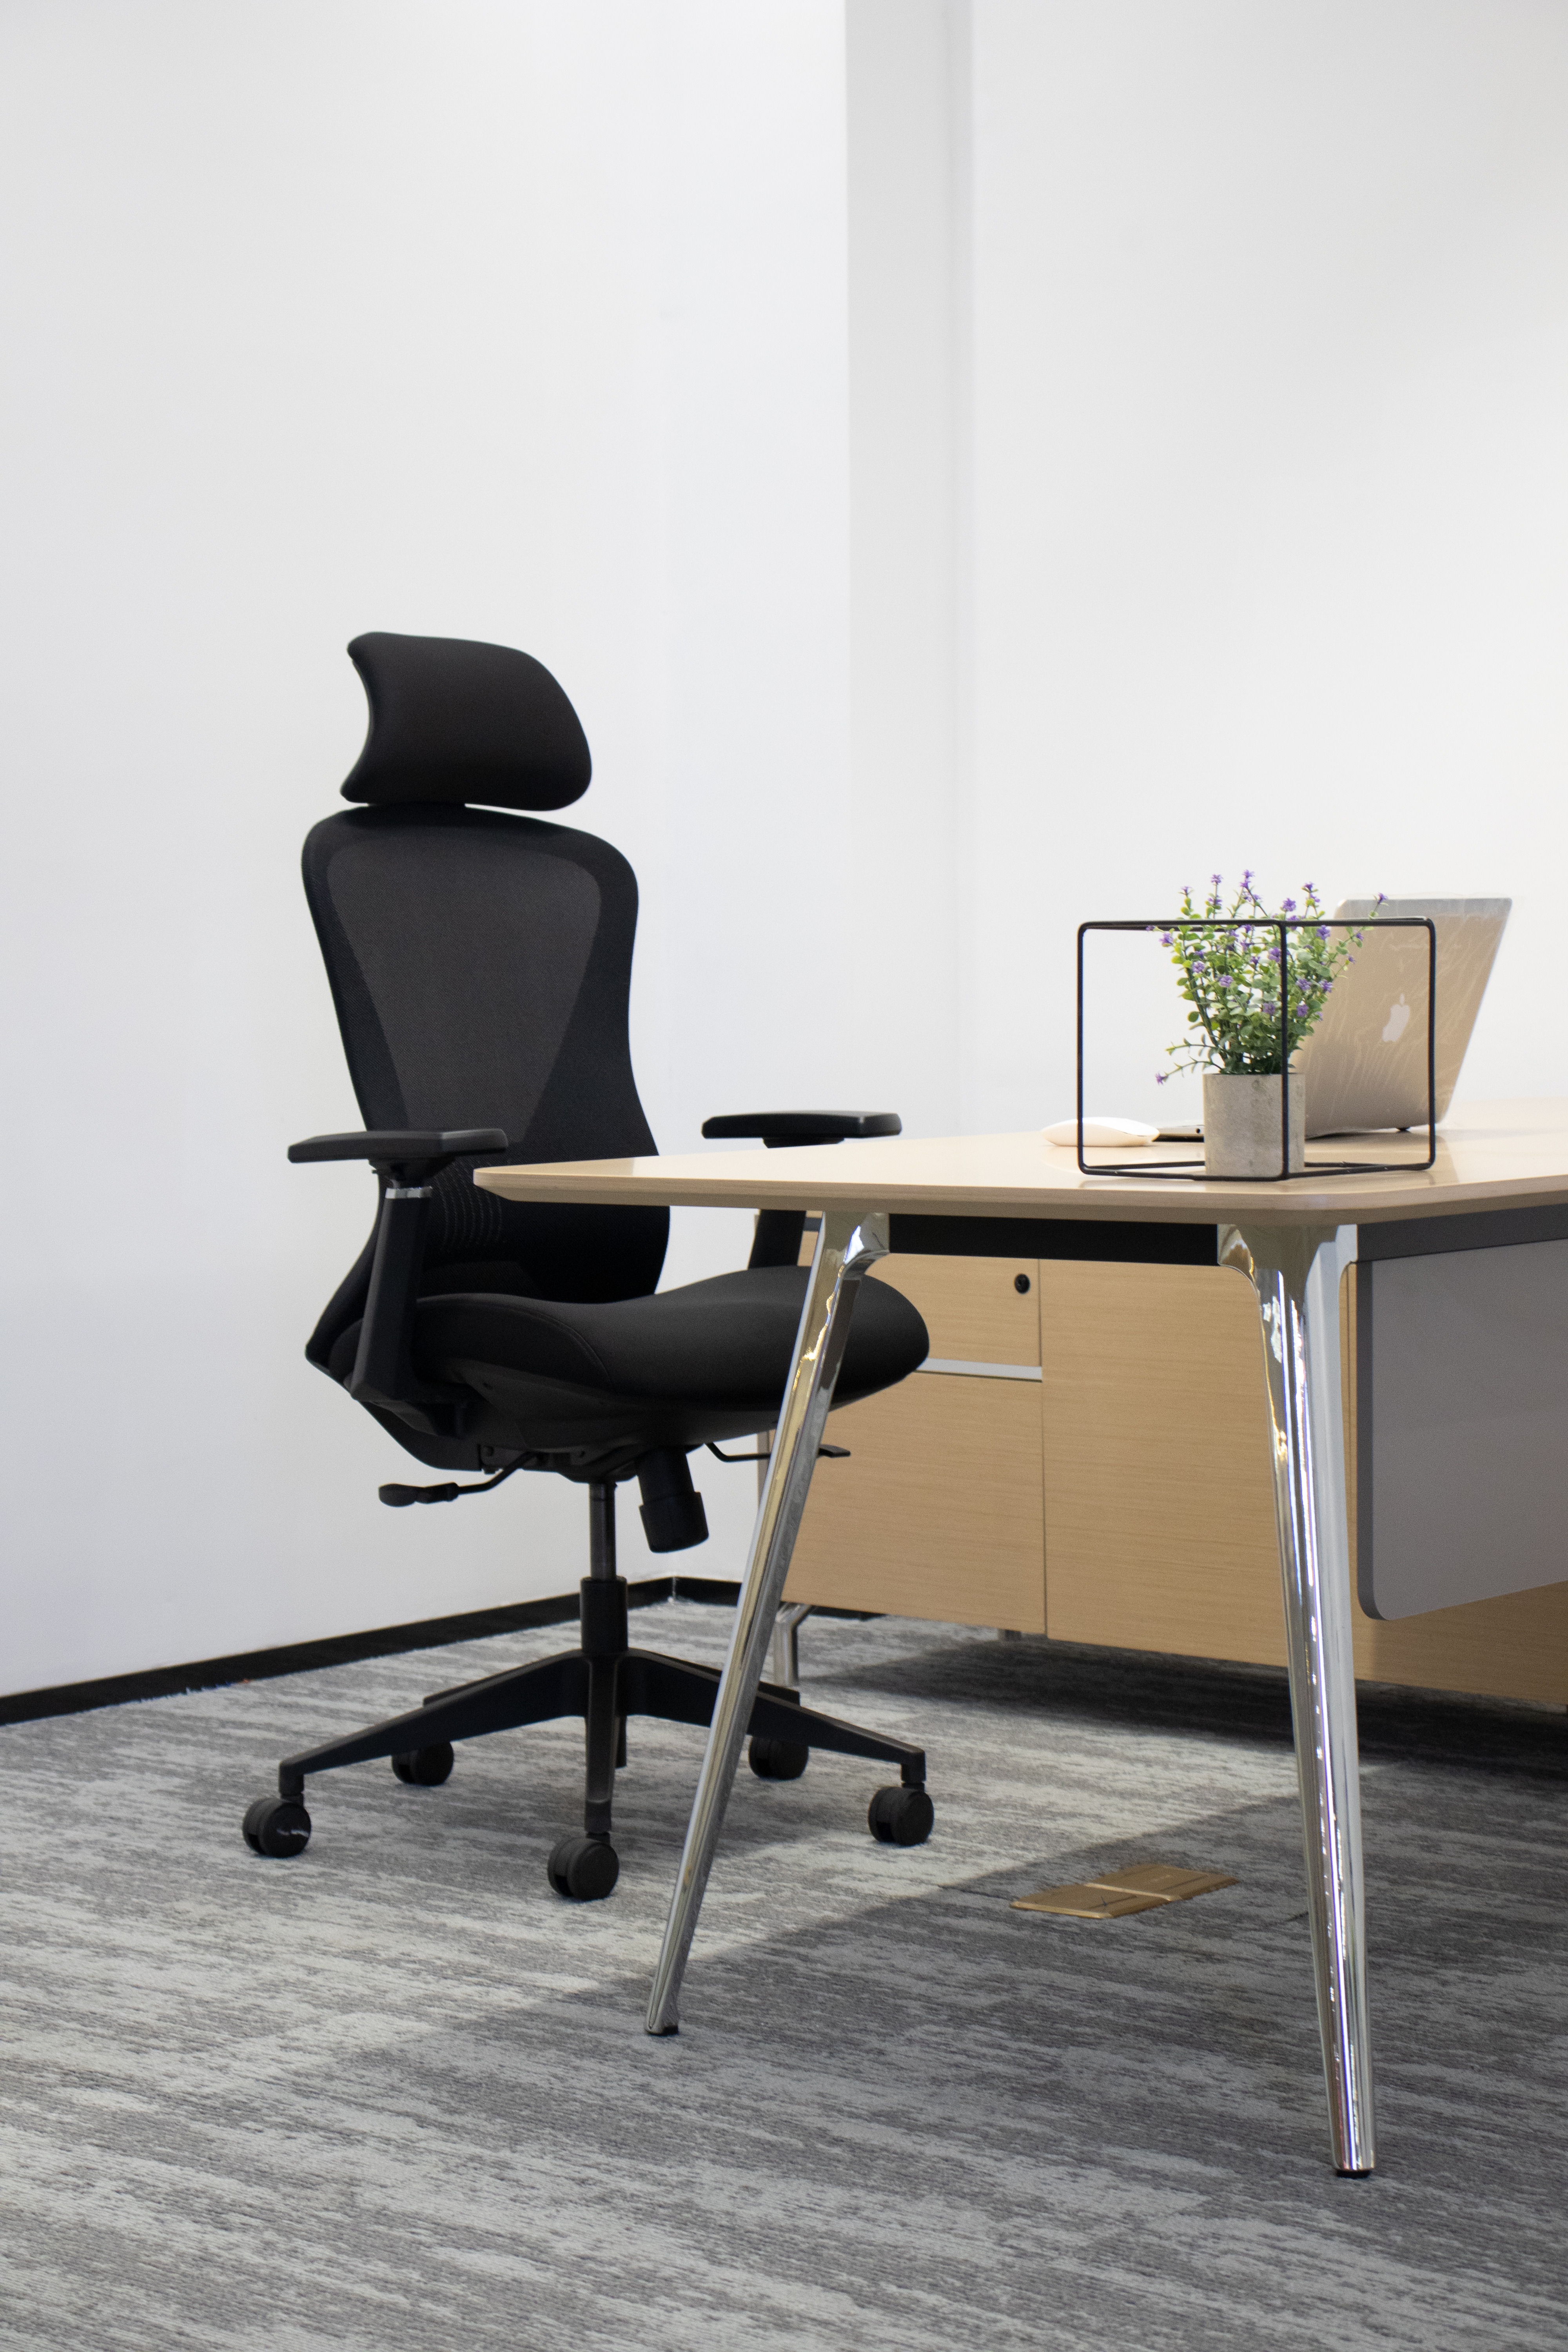 Chaise empilable et accrochable pour salles de réunion